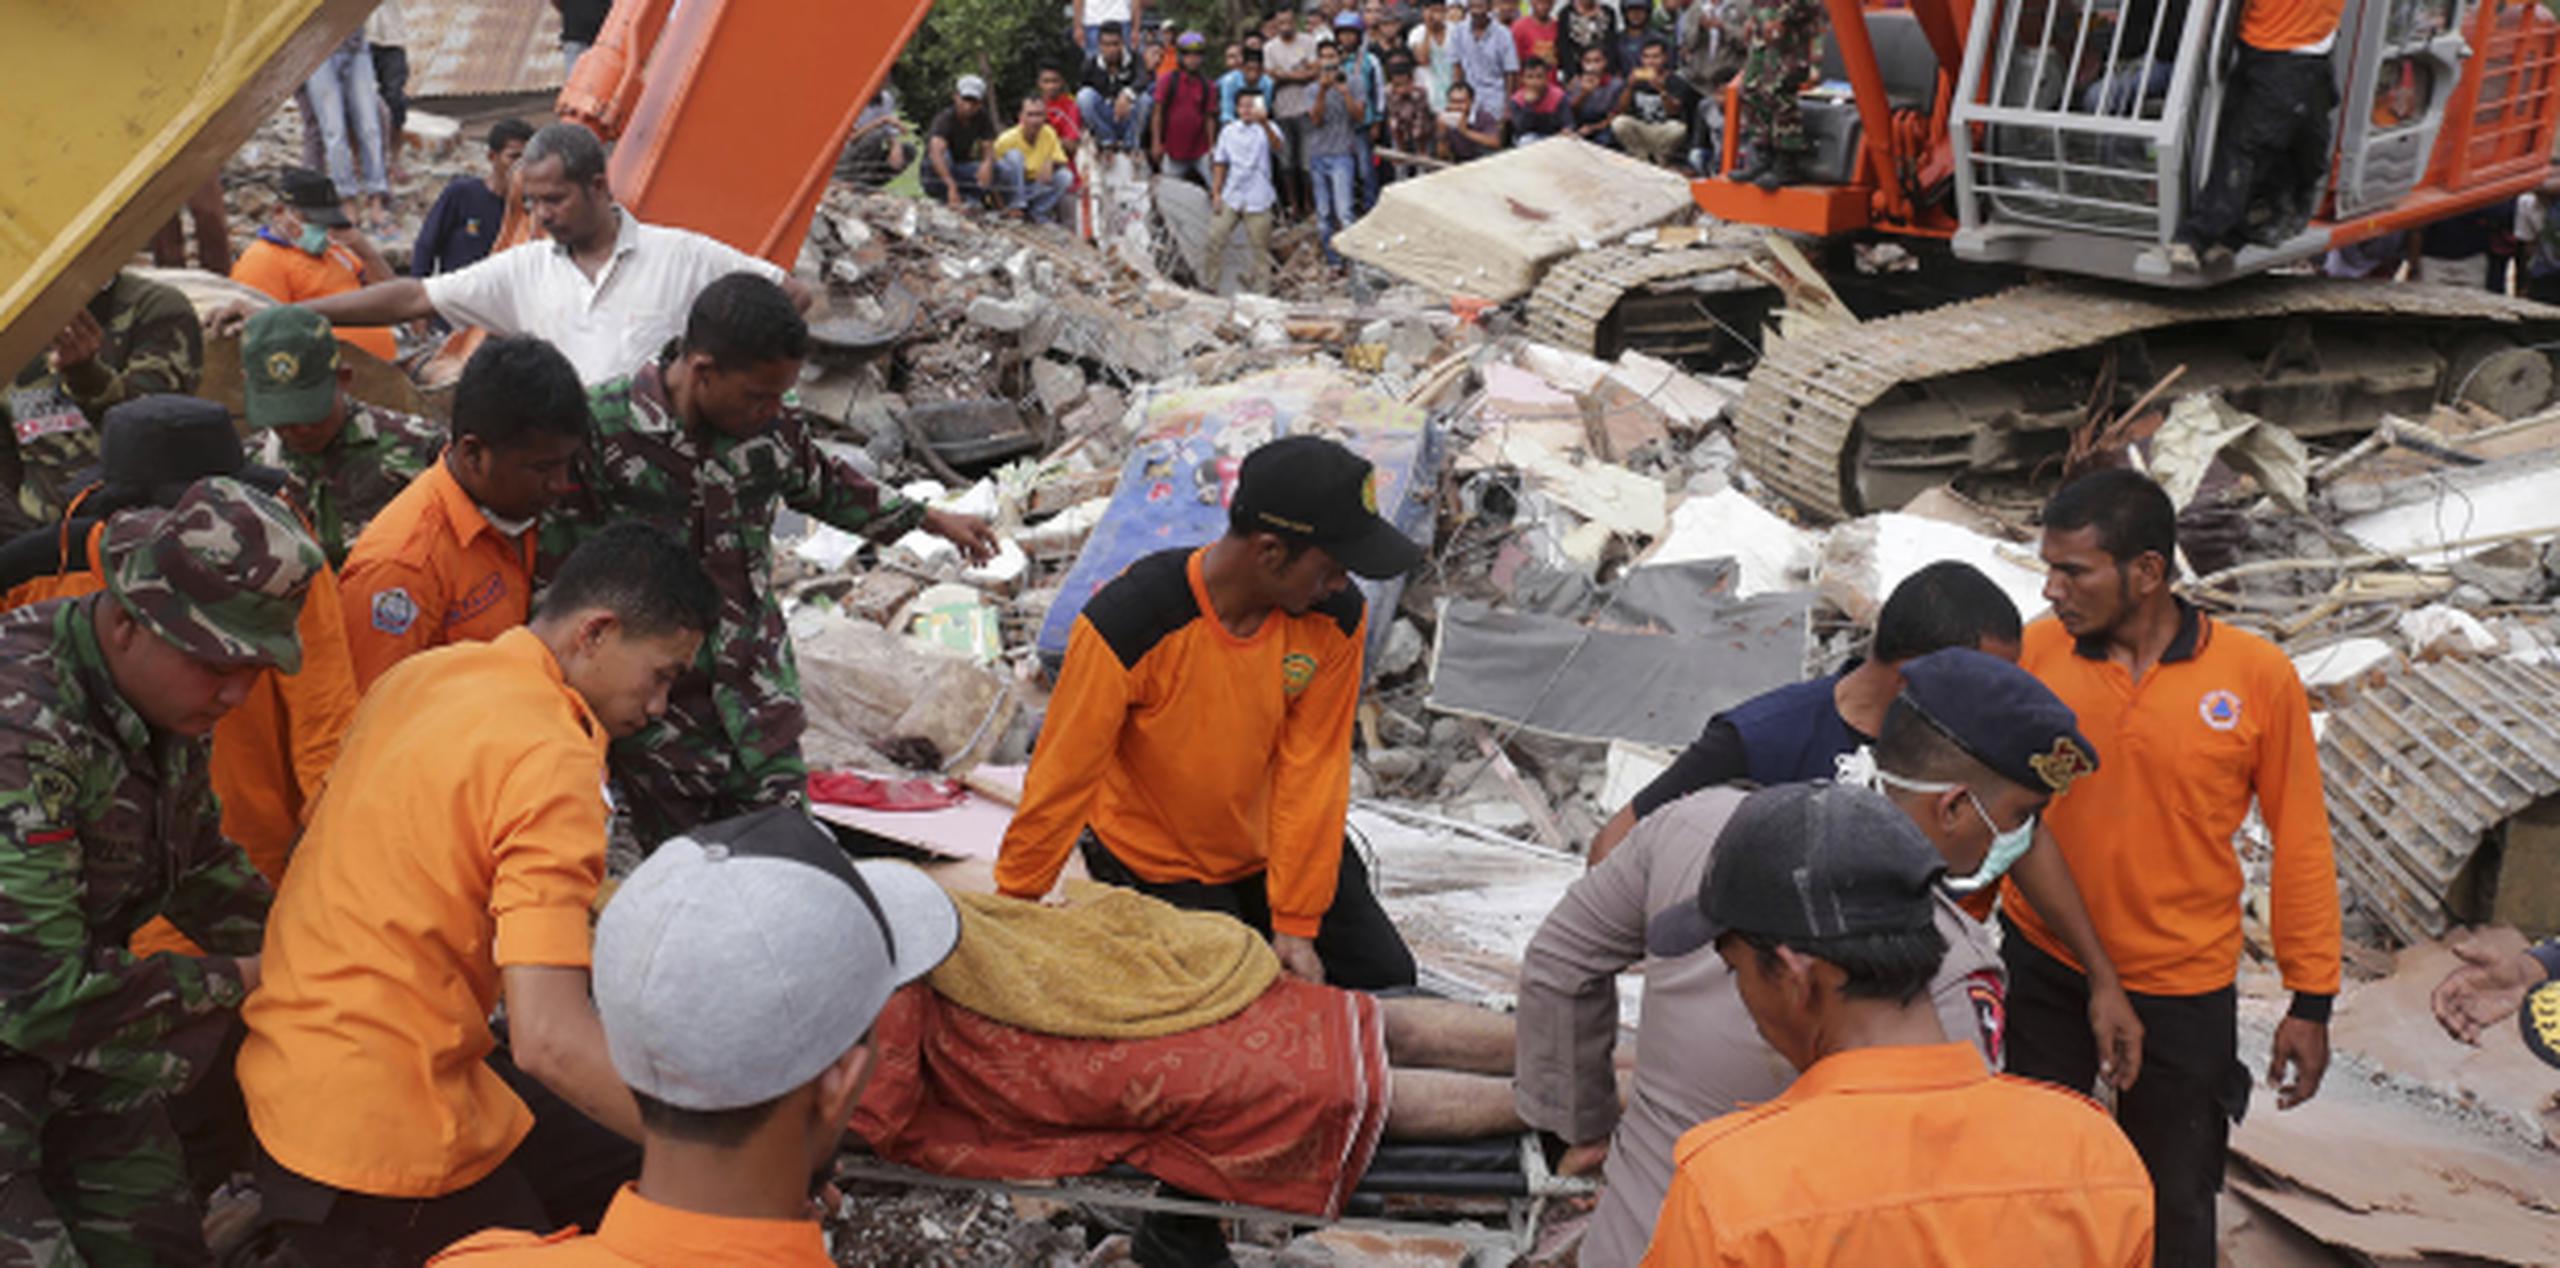 Rescatistas recuperan el cuerpo de una de las víctimas fatales del terremoto que sacudió la provincia de Aceh, en el noroeste de la isla de Sumatra. (AP/Heri Juanda)
